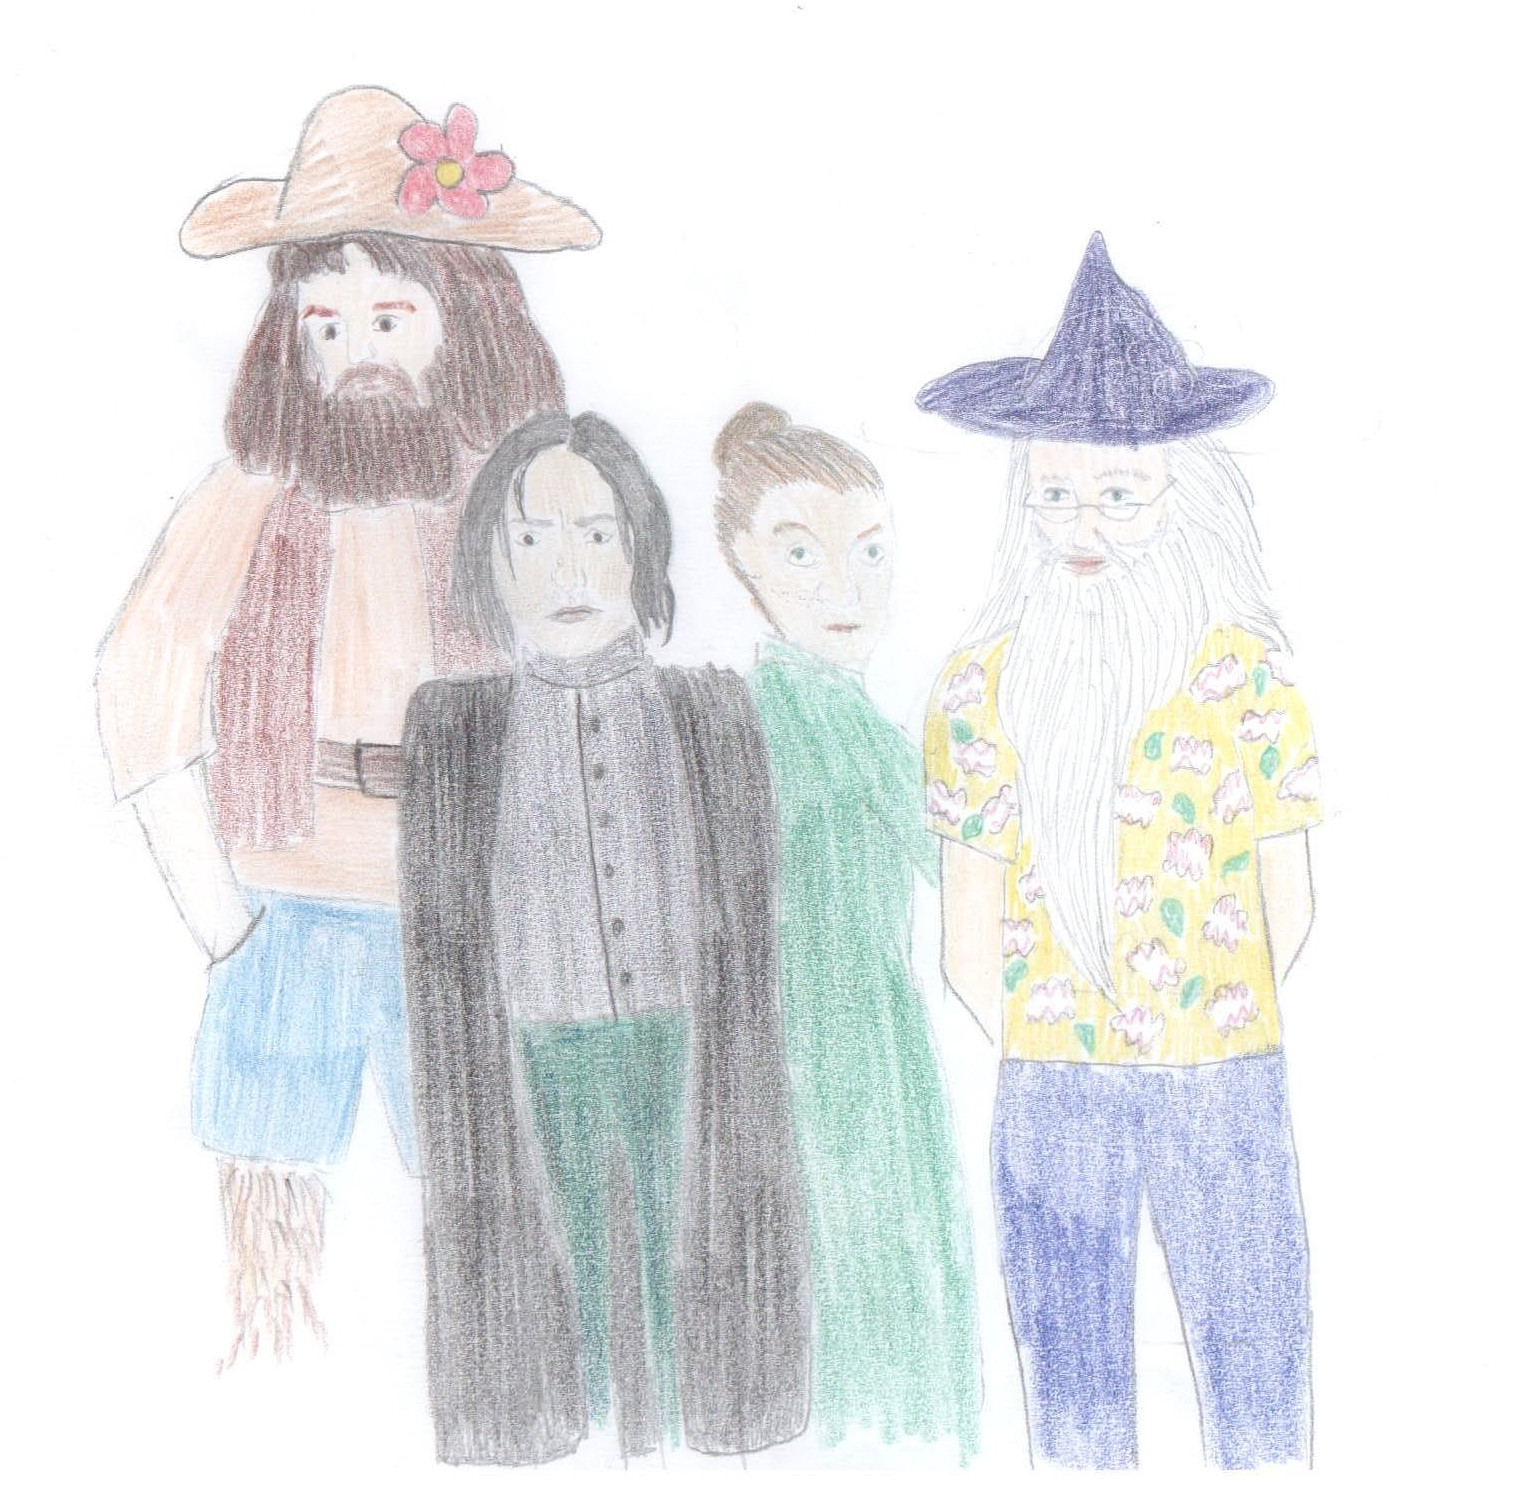 Es sind von links nach rechts die vier Lehrer Hagrid, Snape, McGonagall und Dumbledore zu sehen. Hagrid trägt ein hellbraunes Hemd mit kurzen Ärmlen und einer dunkelbraunen Weste darüber. Außerdem eine knielange grüne Hose und einen hellbraunen Hut mit einer rosafarbenen Blume an der Krempe. Snape ist wie eh und je in sein schwarzes Hemd, Hose und Umhang gehüllt. McGongall trägt ein langes grünes Kleid und Dumbledore eine lange blaue Hose, ein gelbes Hawaiihemd mit grünen und weiß-roten Mustern darauf und einen spitzen, dunkelfarbigen Hut.